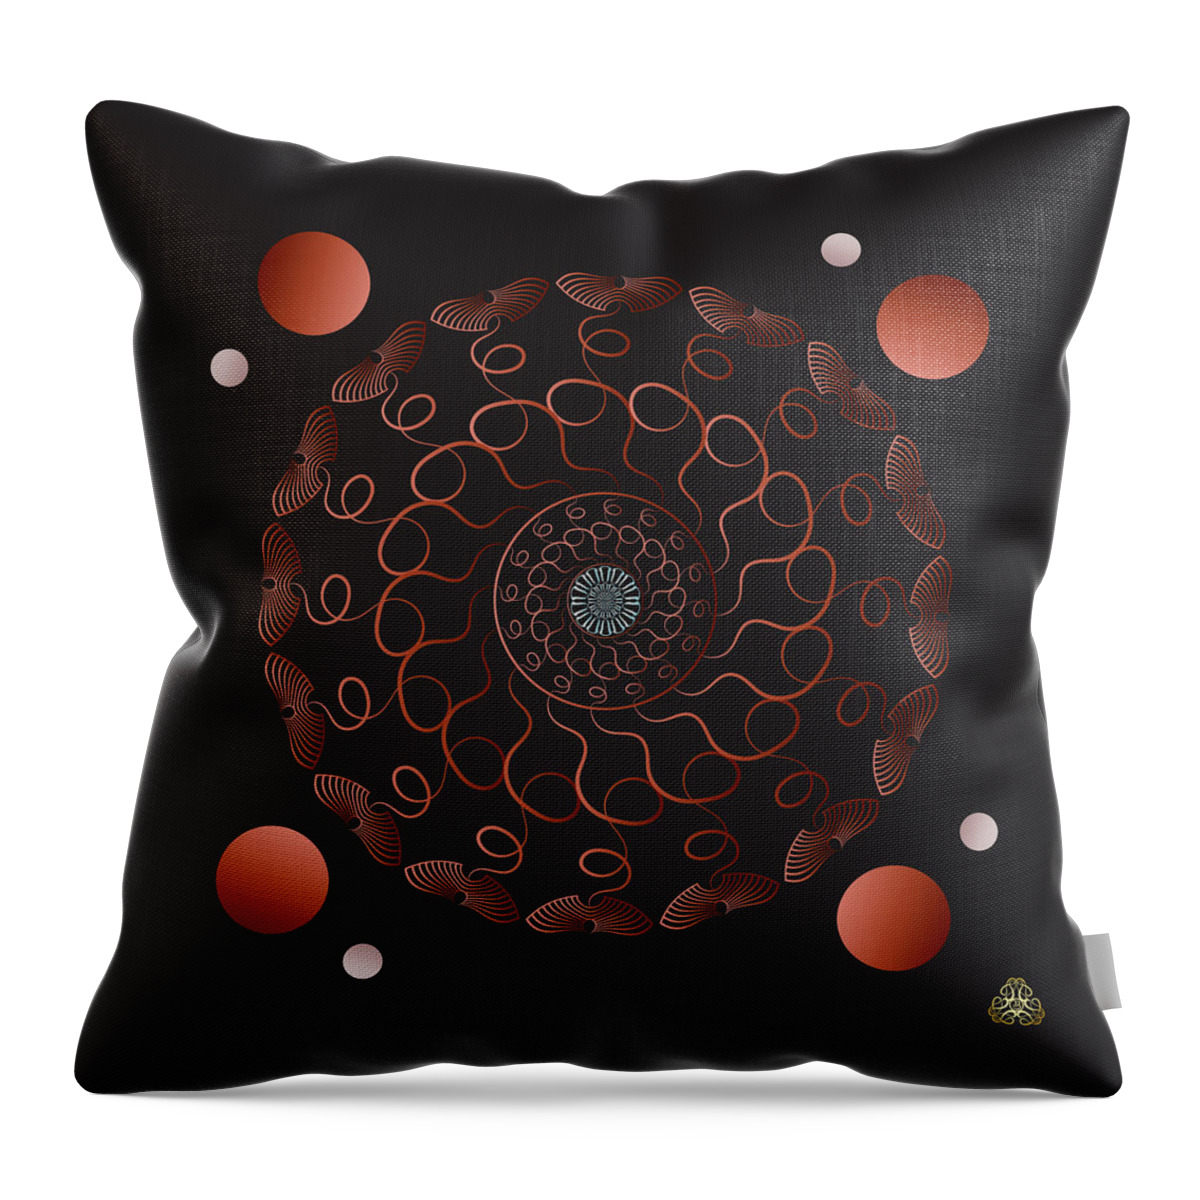 Mandala Throw Pillow featuring the digital art Kuklos No 4335 by Alan Bennington